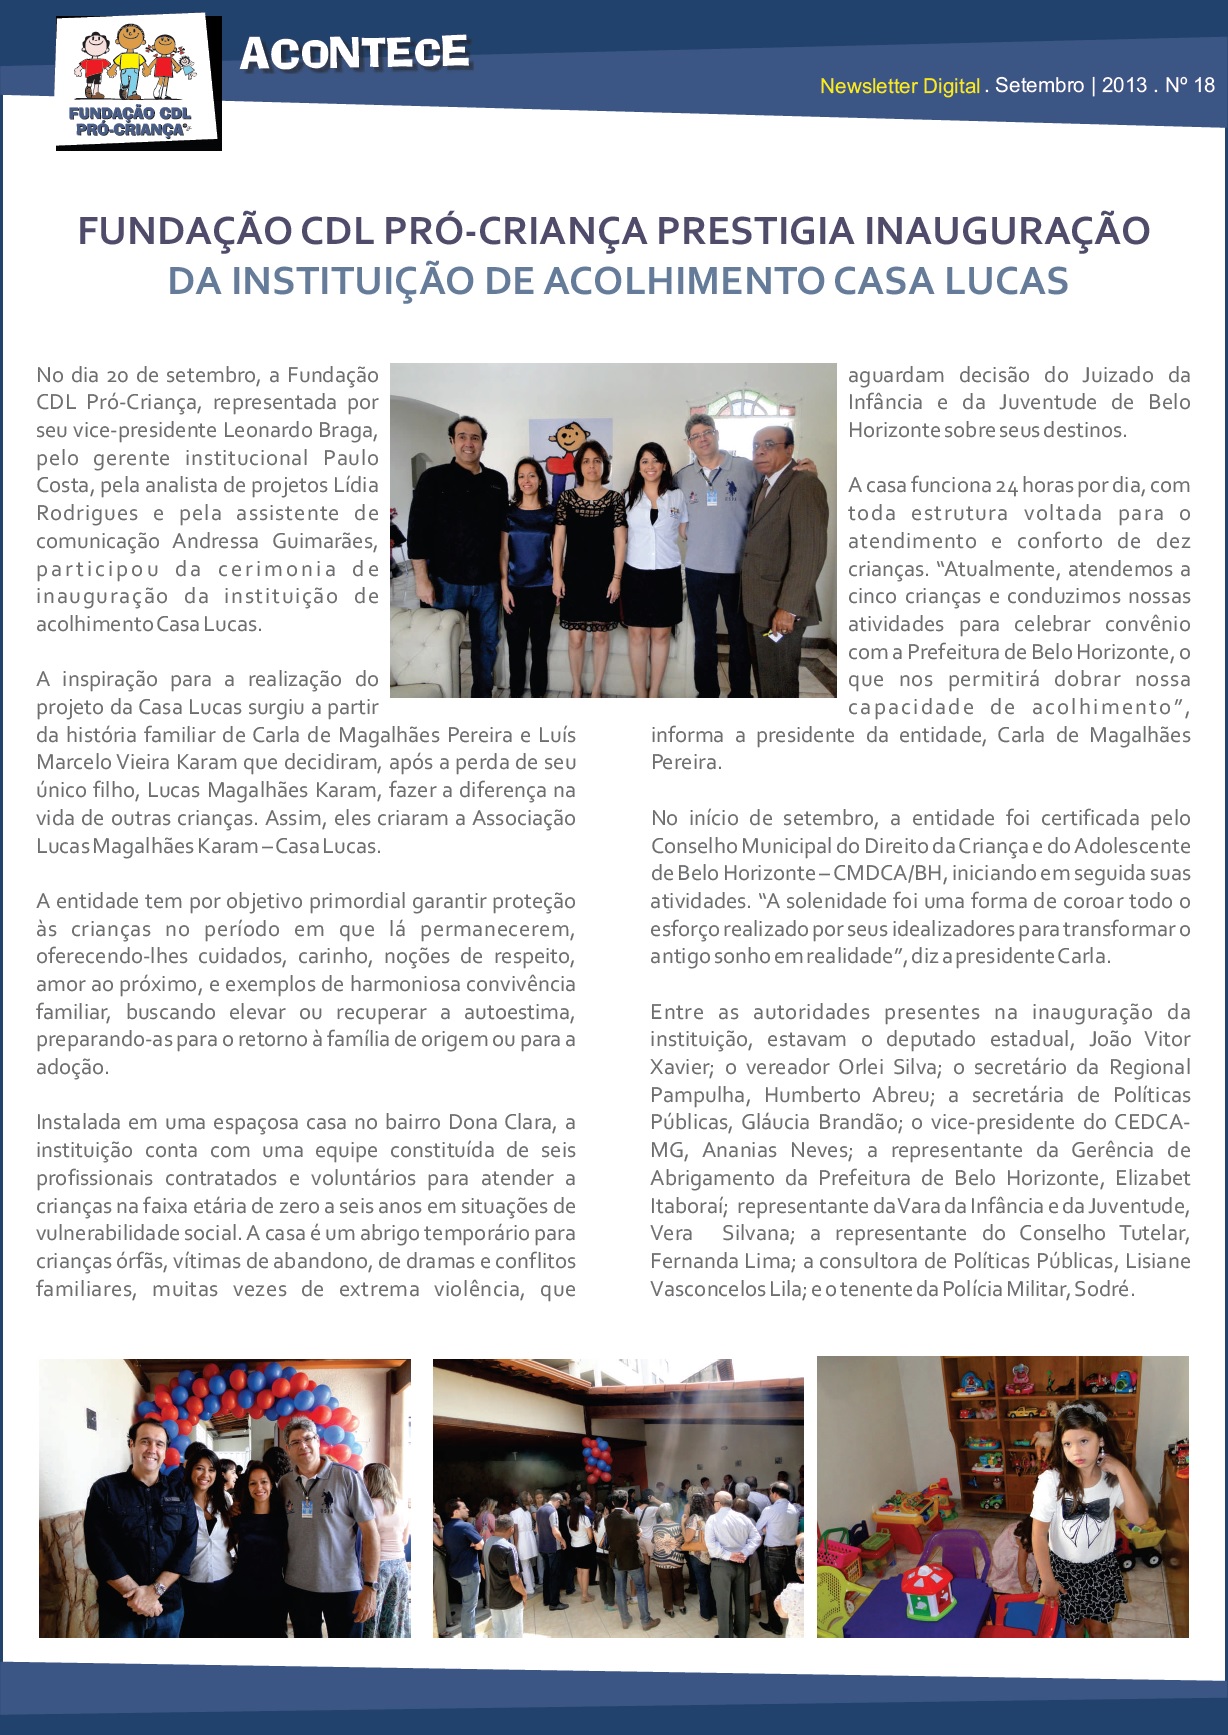 Fundação CDL Pró Criança prestigia inauguração da instituição de acolhimento Casa Lucas